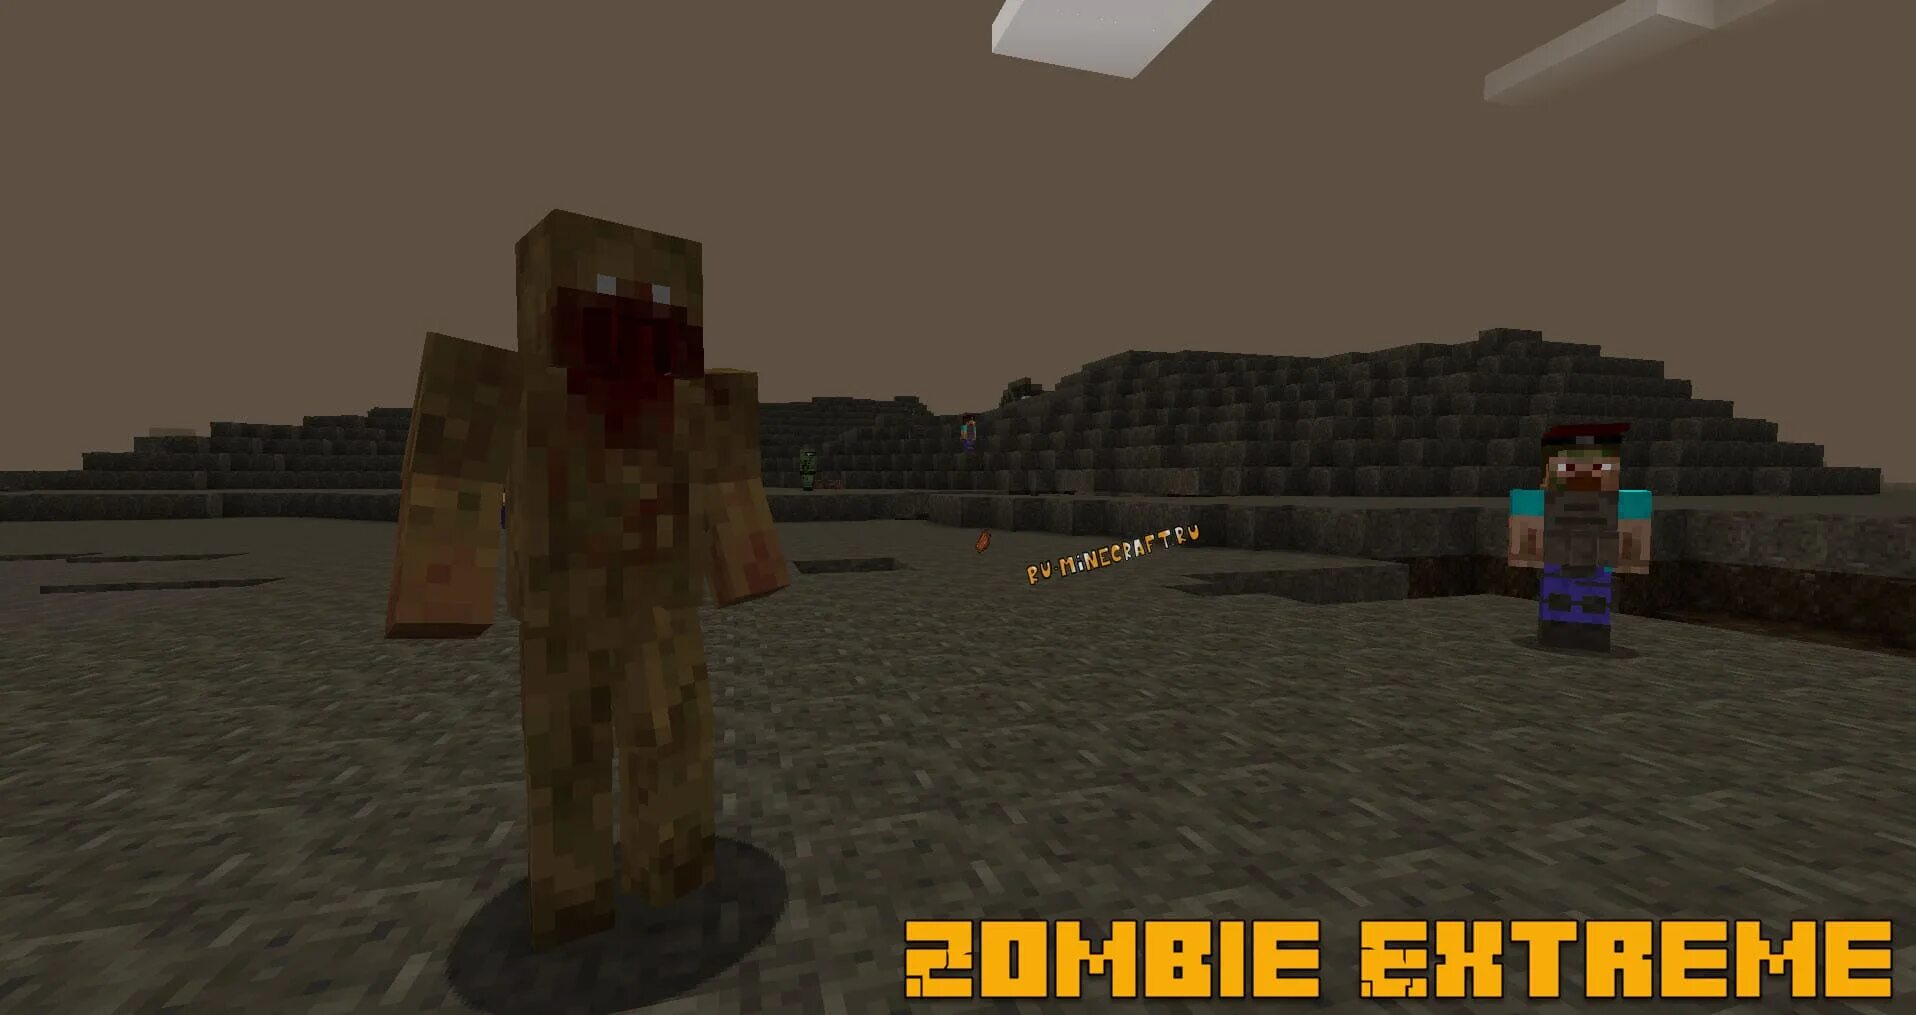 Mod Zombie extreme 1.16.5. Зомби апокалипсис майнкрафт 1.16.5. Apocalypse Mod Zombie Mod. Мод на зомби апокалипсис 1.19. Сборка модов майнкрафт зомби апокалипсис 1.16 5